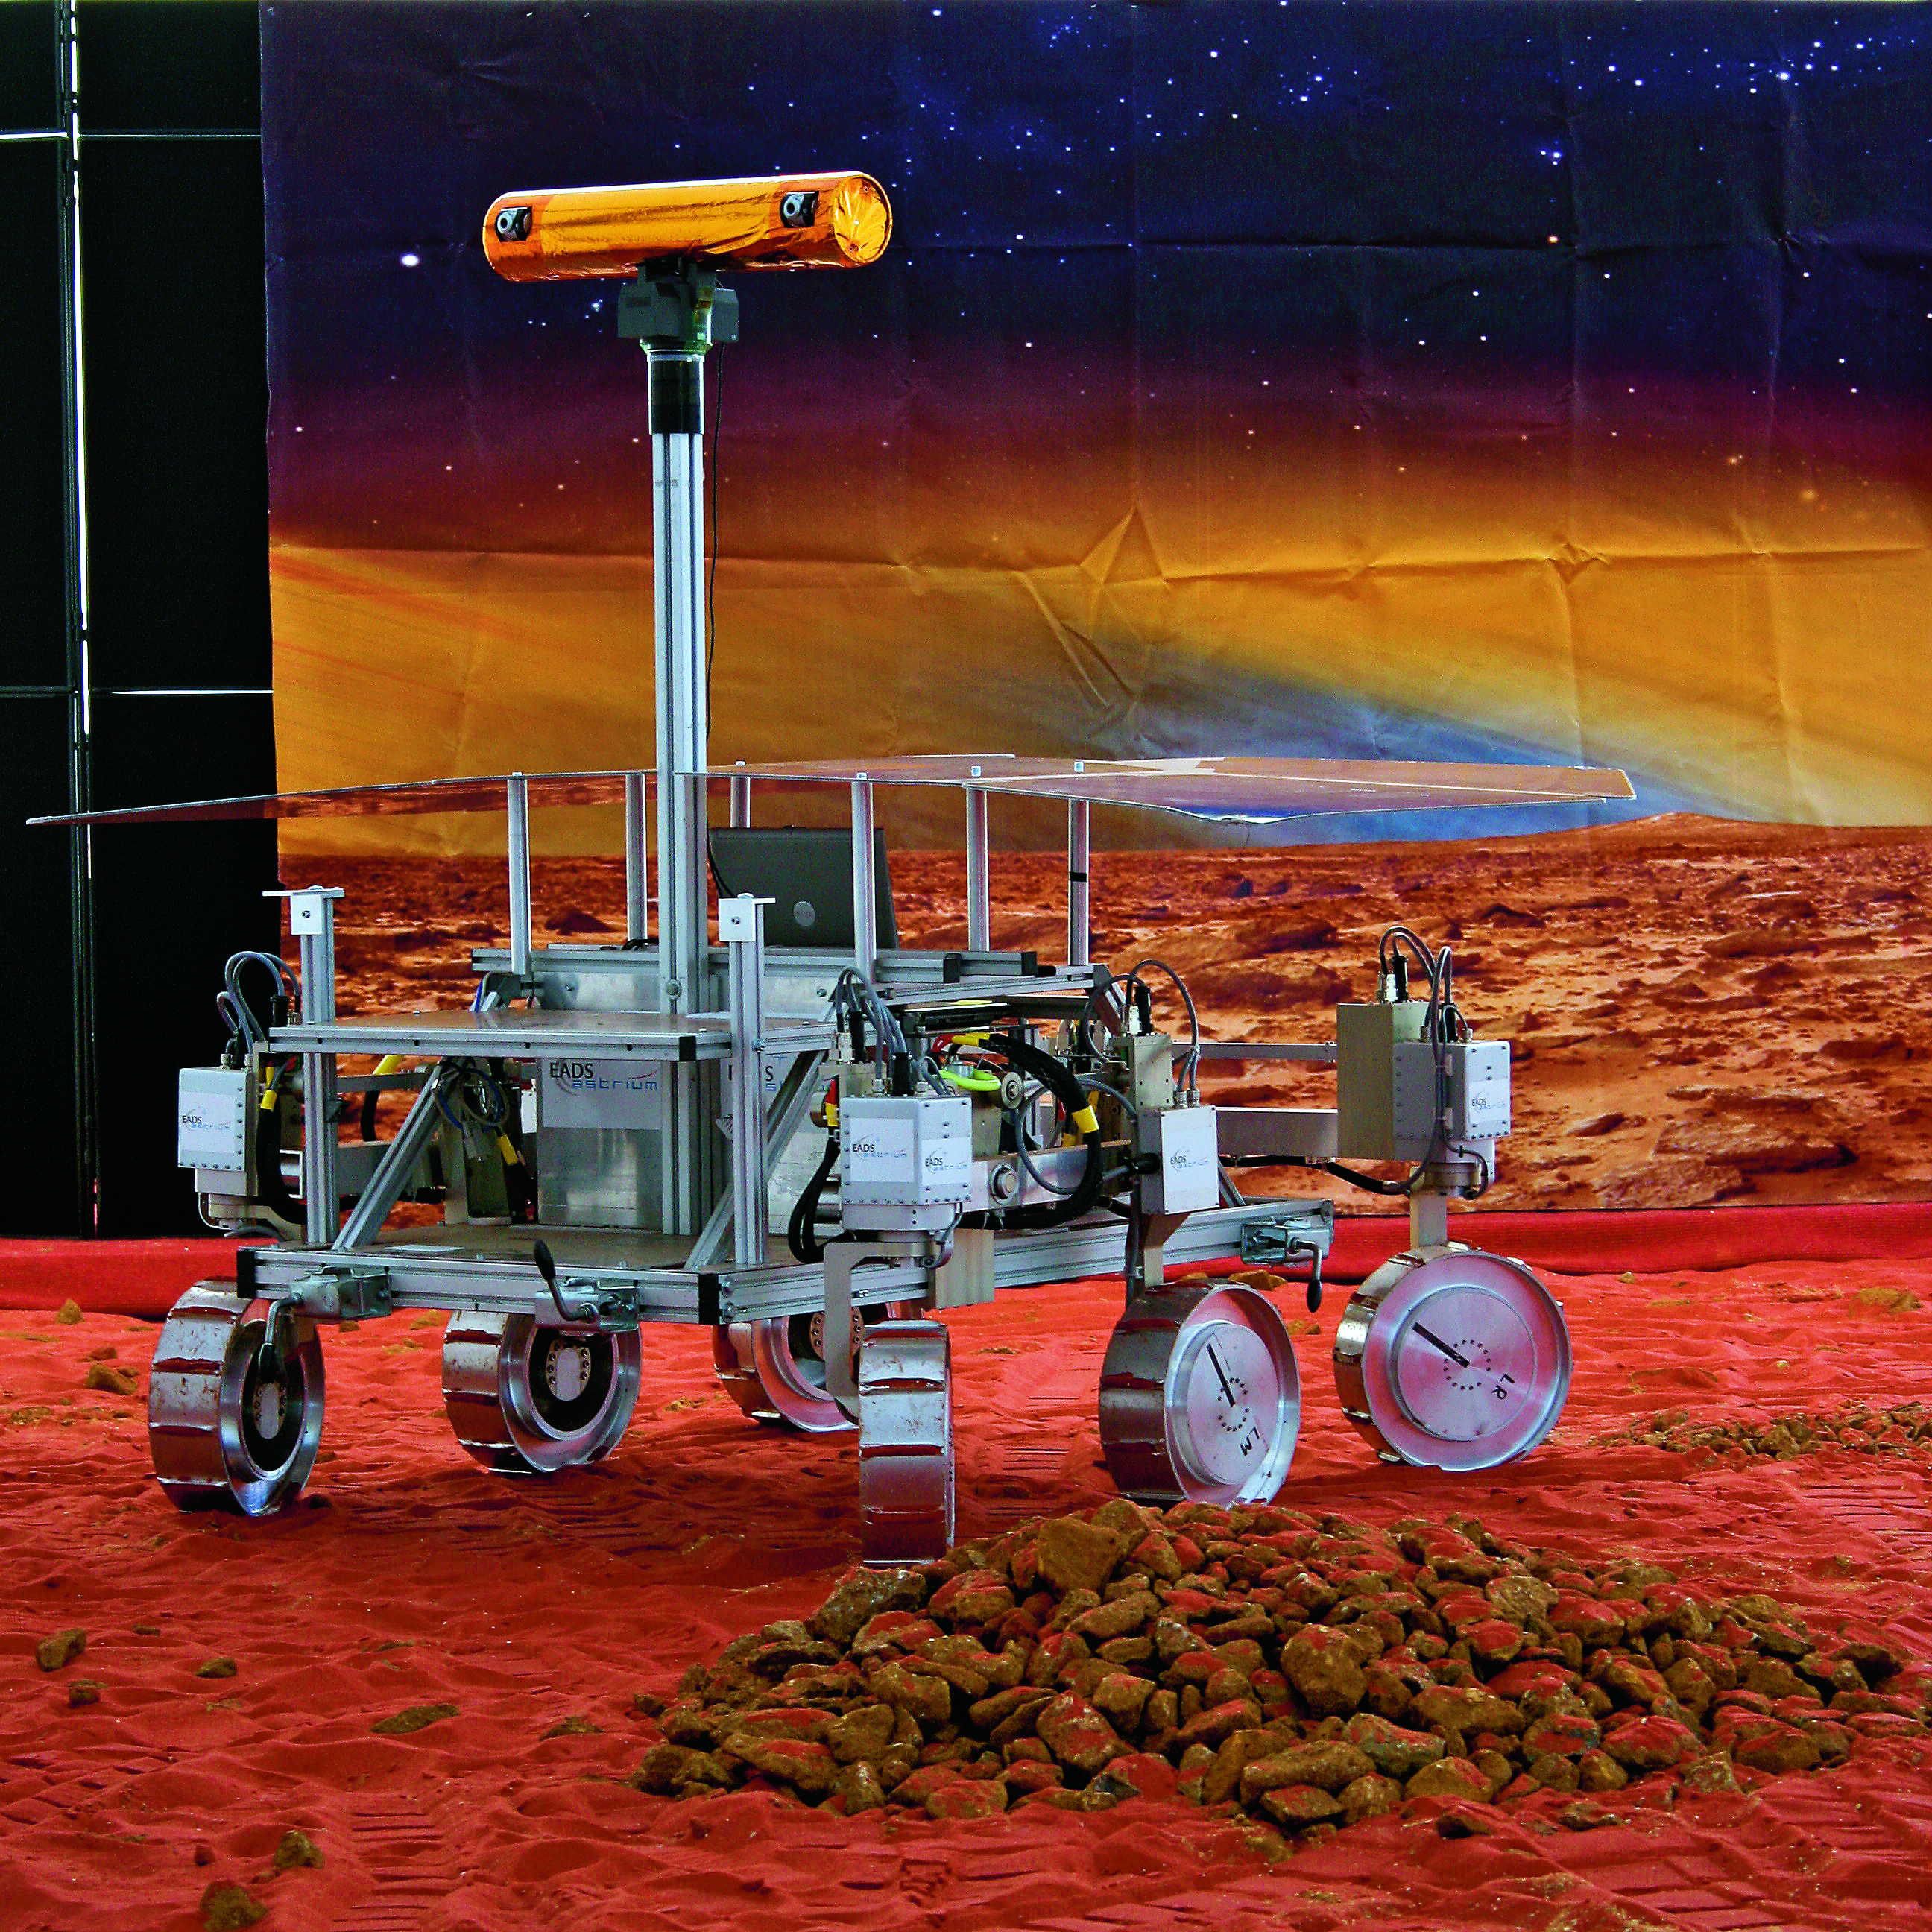 Prototyp marsjańskiego łazika Europejskiej Agencji Kosmicznej (ESA) według projektu z 2009 r. Urządzenie ma szukać śladów życia na Marsie.